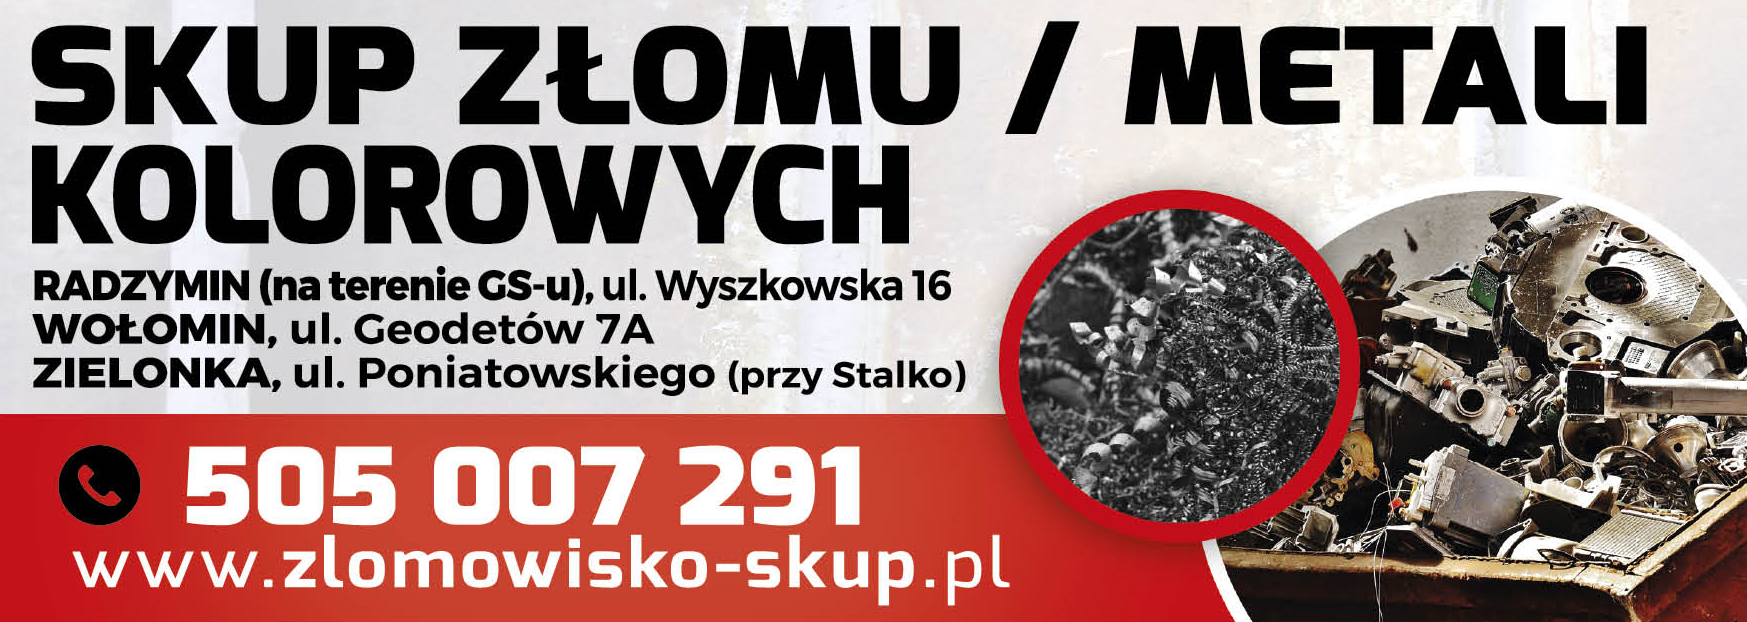 ZŁOMOWISKO SKUP Zielonka / Wołomin / Radzymin - Skup Złomu i Metali Kolorowych